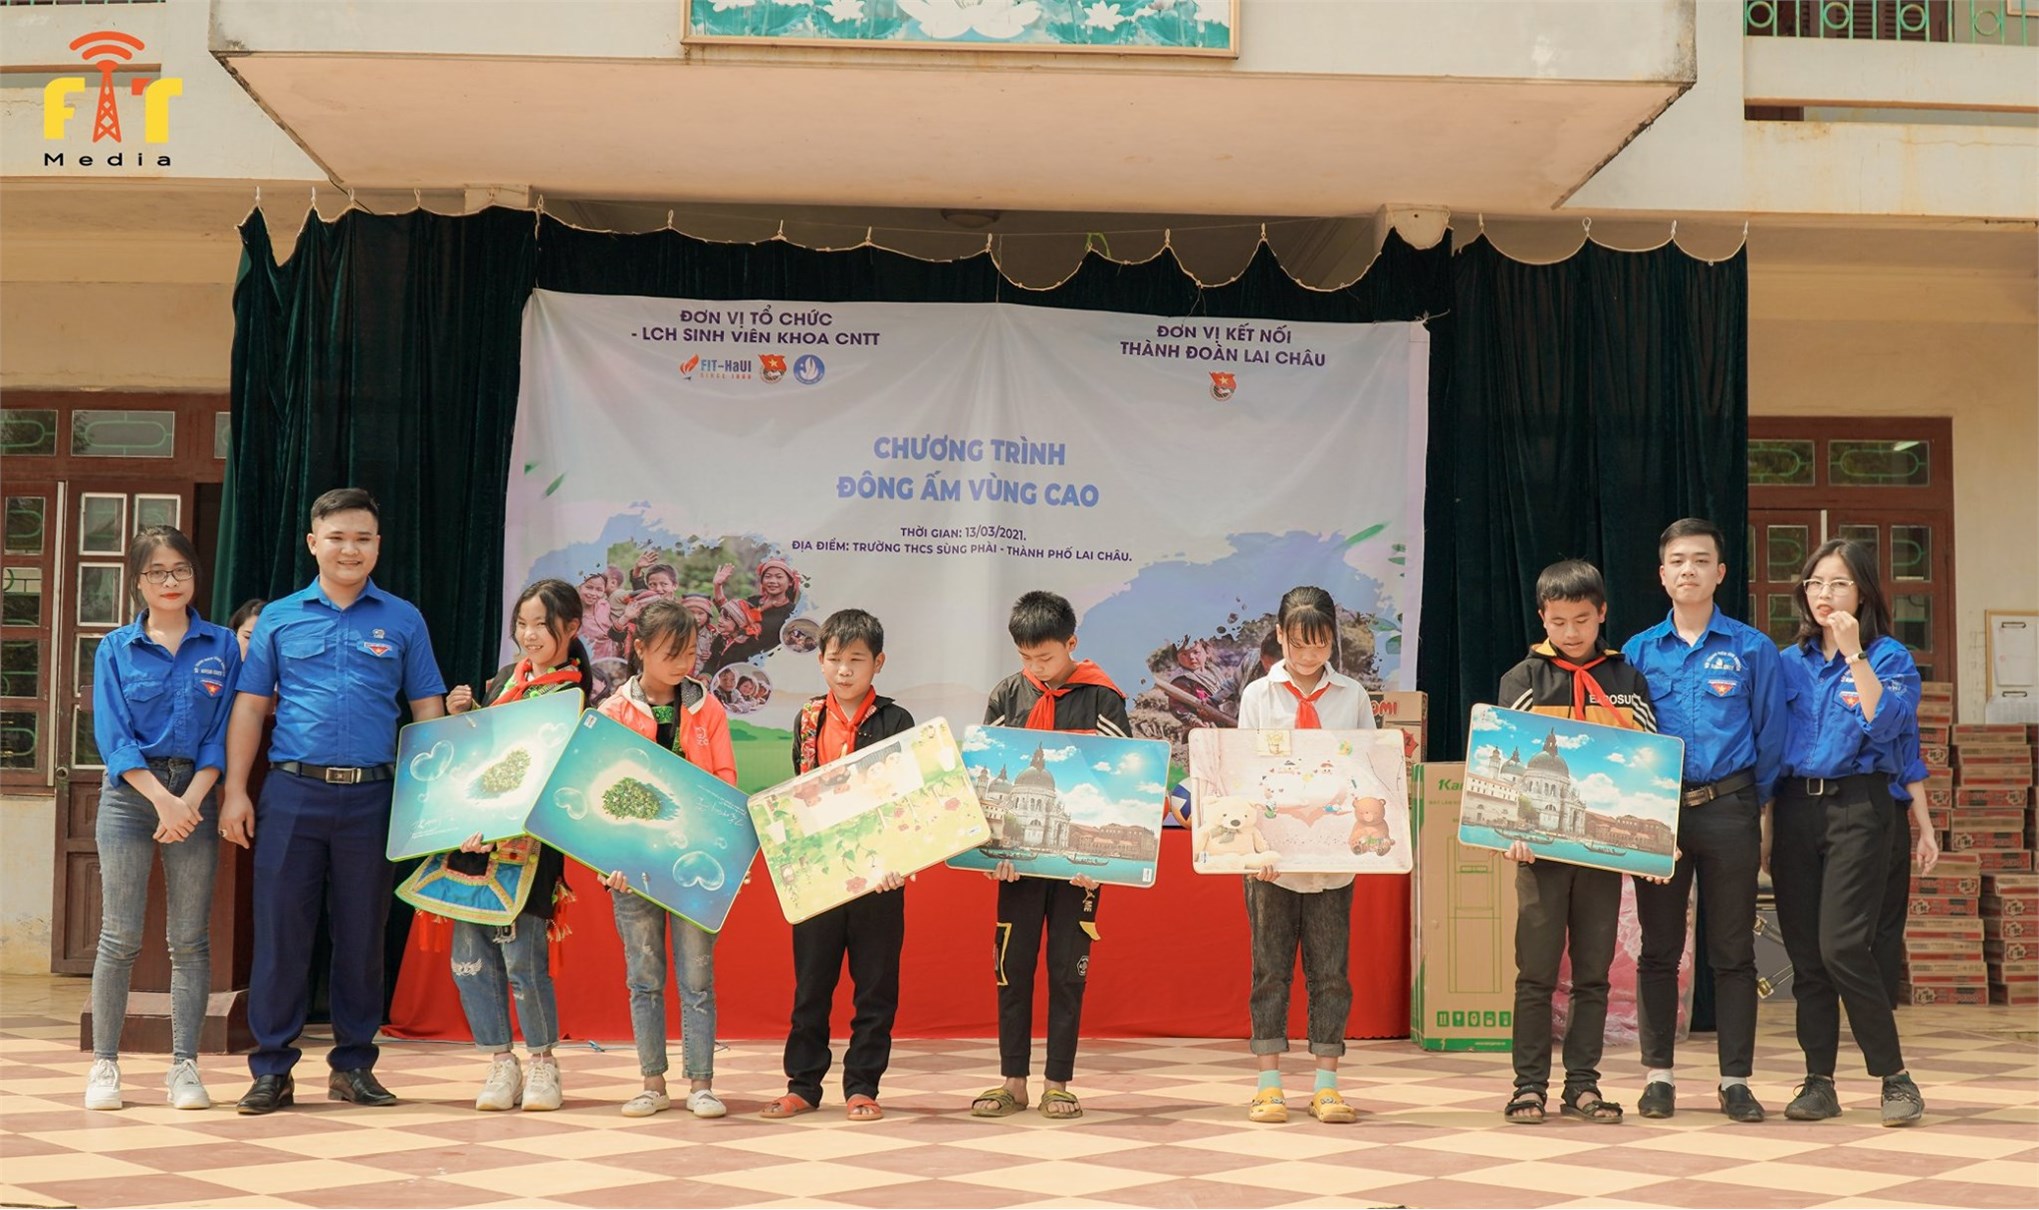 Chương trình “Đông ấm vùng cao” đến với học sinh huyện miền núi Lai Châu